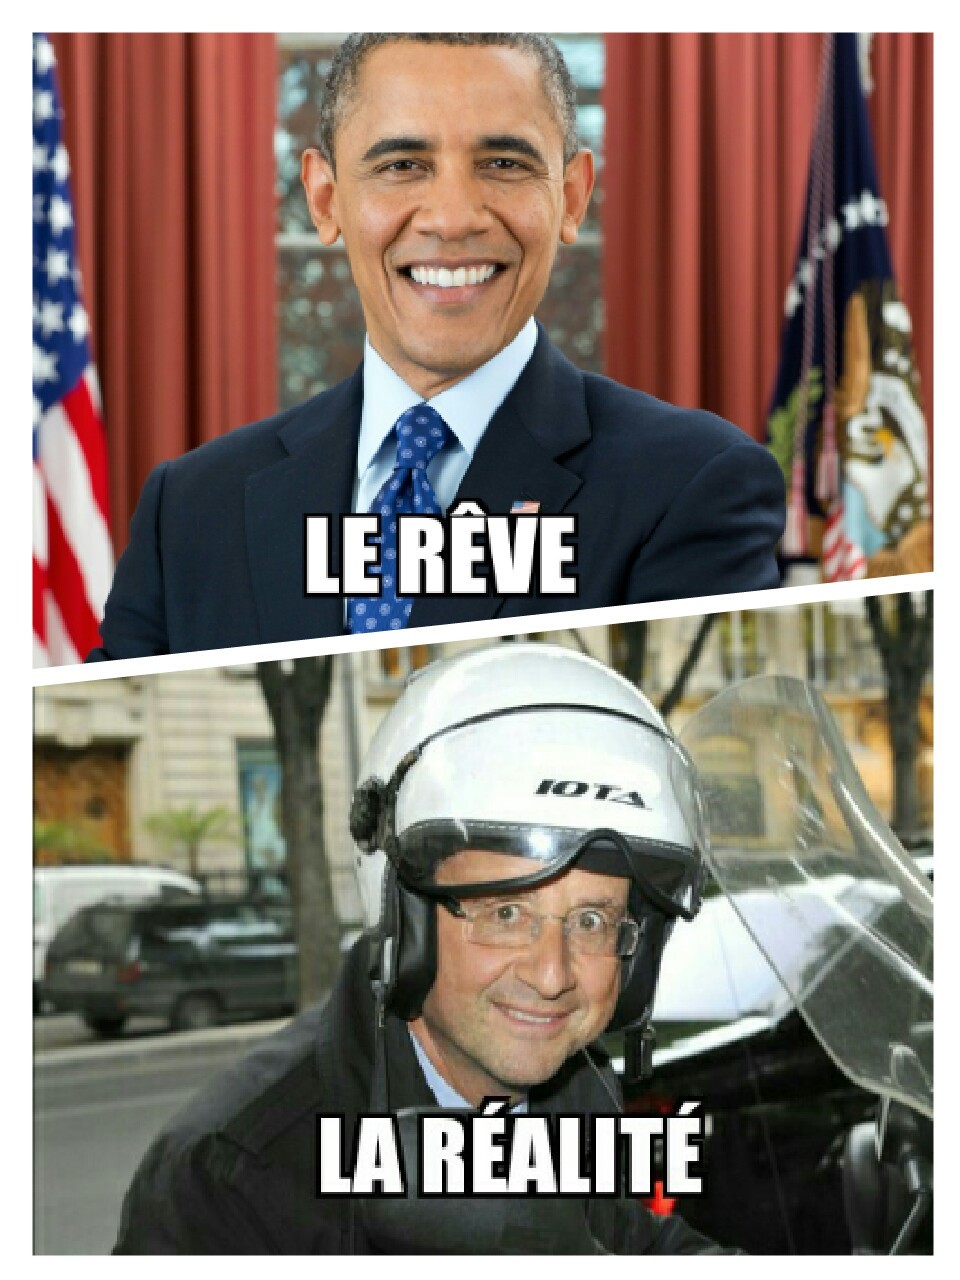 Vive la France - meme